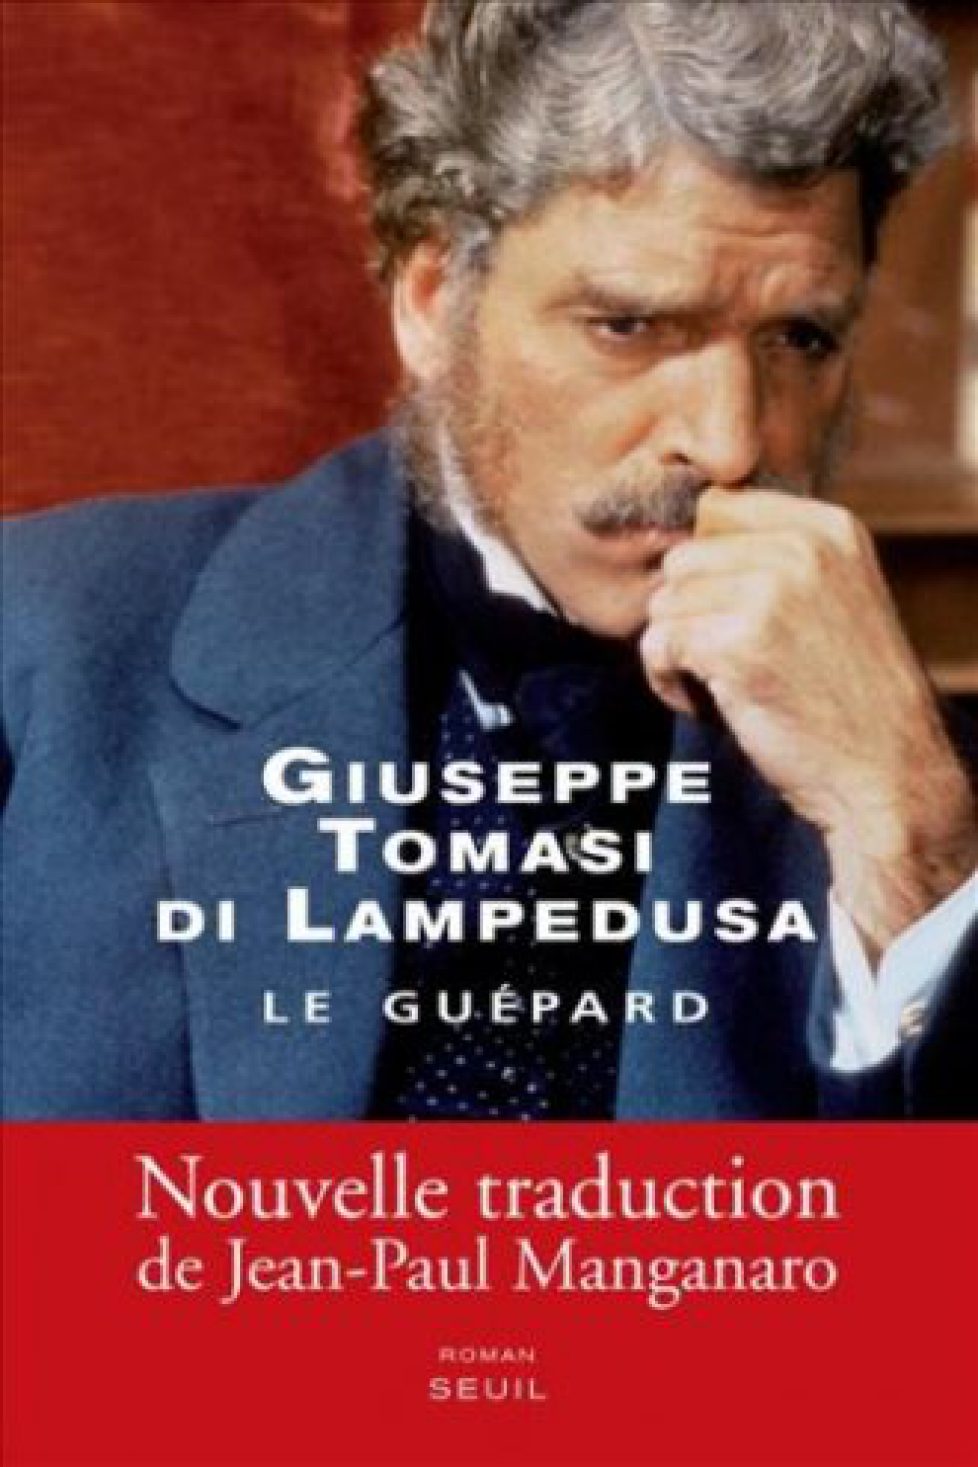 Nouvelle édition du livre « Le Guépard »